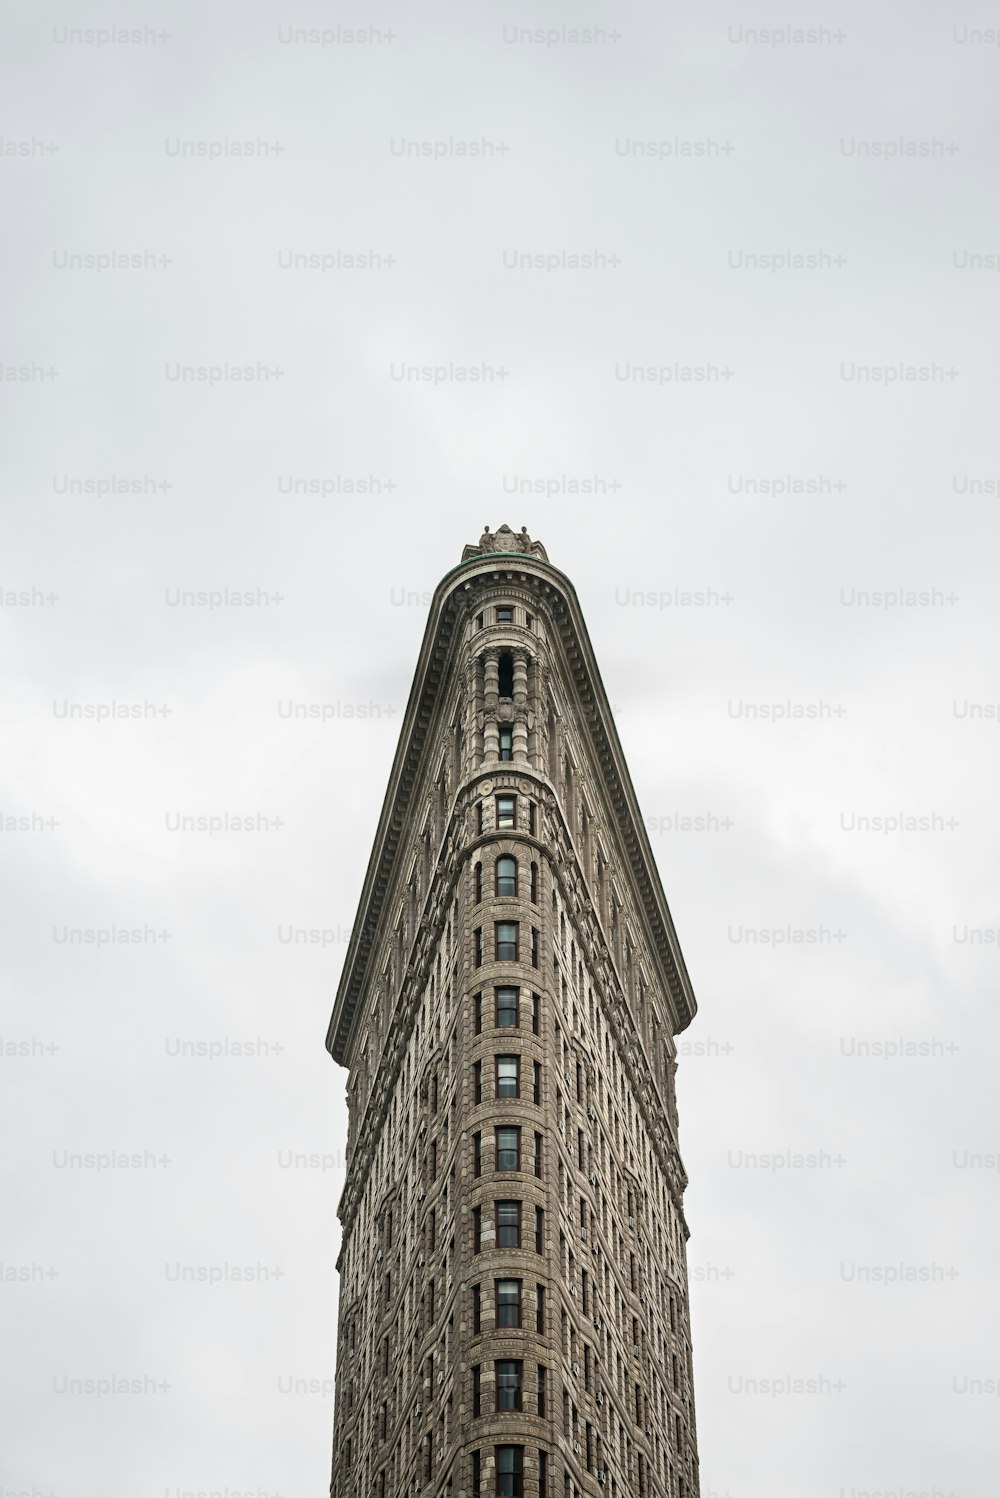 Vue de face de l’immeuble Flatiron à New York. Connu à l’origine sous le nom de Fuller Building, il a été achevé en 1902 selon les plans de Daniel Burnham de Chicago et est devenu à l’époque l’un des plus hauts bâtiments de la ville et l’un des deux seuls gratte-ciel au nord de la 14e rue.